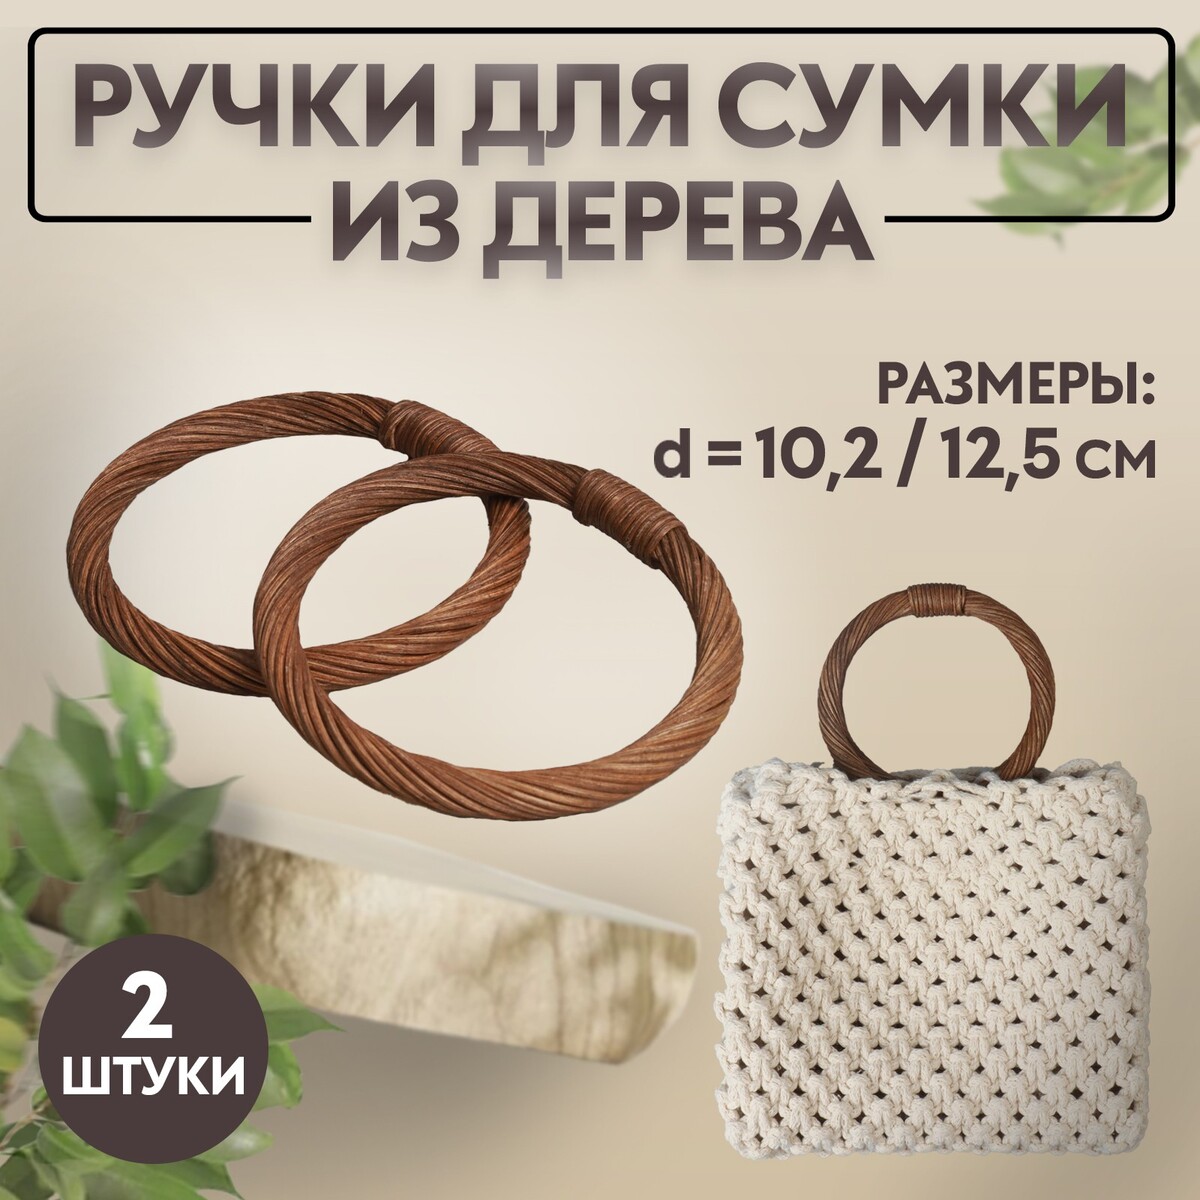 Ручки для сумки деревянные, плетеные, d = 10,2 / 12,5 см, 2 шт, цвет коричневый ручки для сумки 2 шт 44 5 × 4 5 см